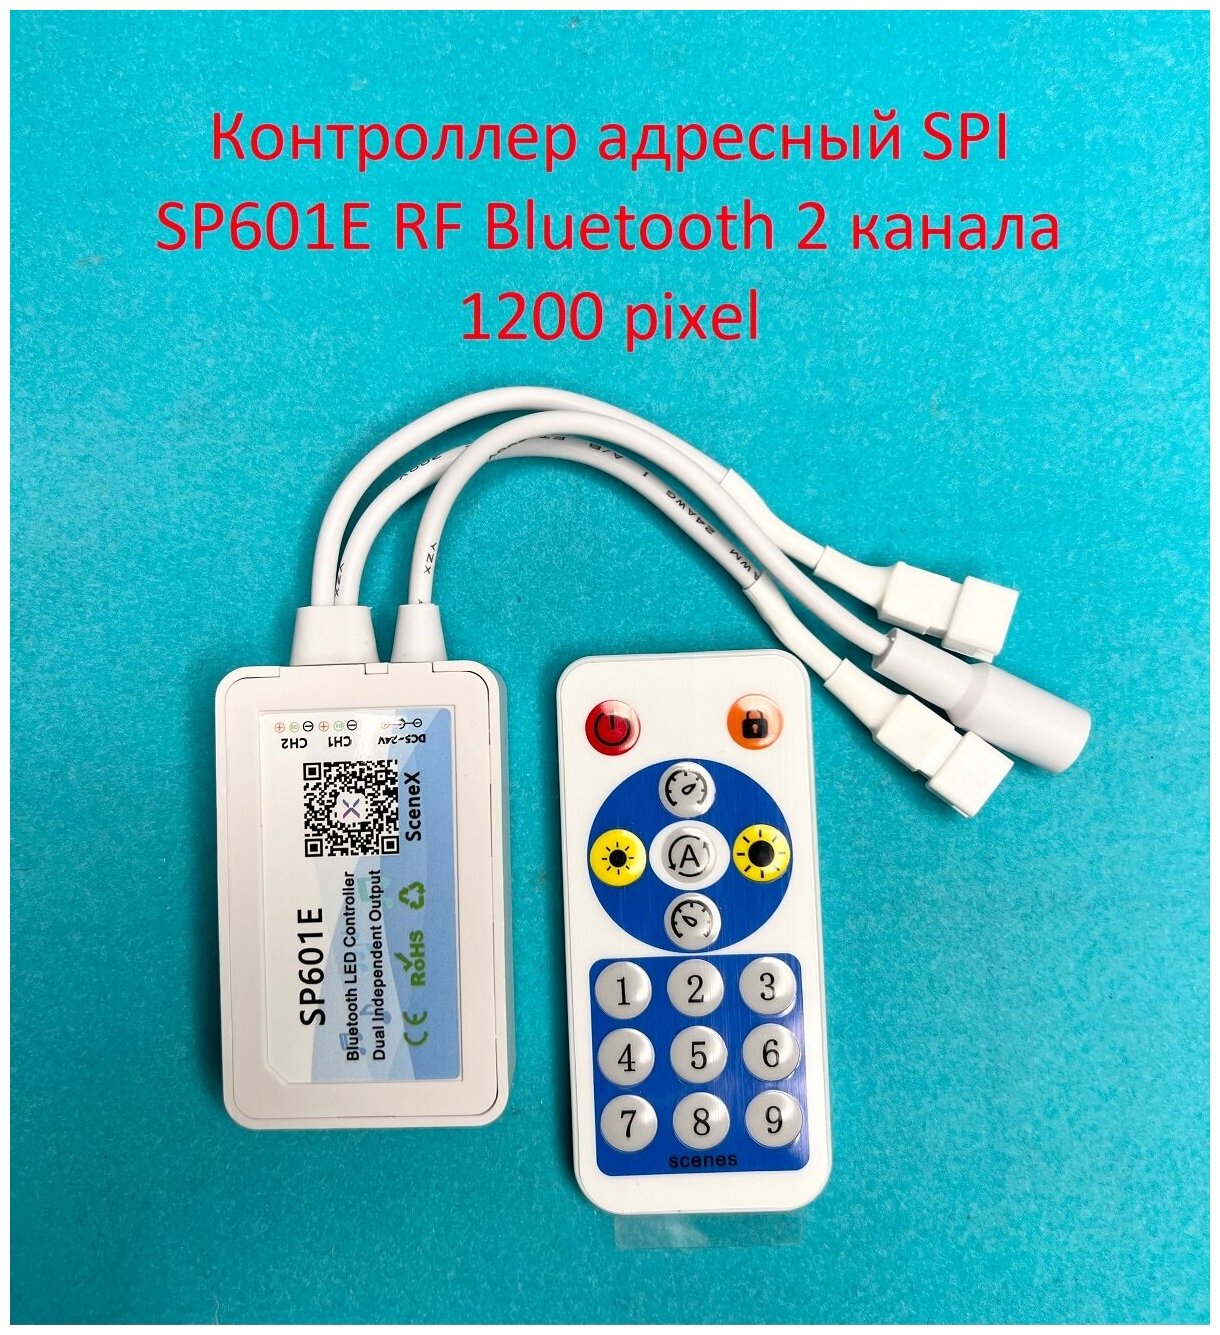 Контроллер адресный SPI SP601E Bluetooth RF 16 кнопок 2 канала 5-24v 1200 пикселей